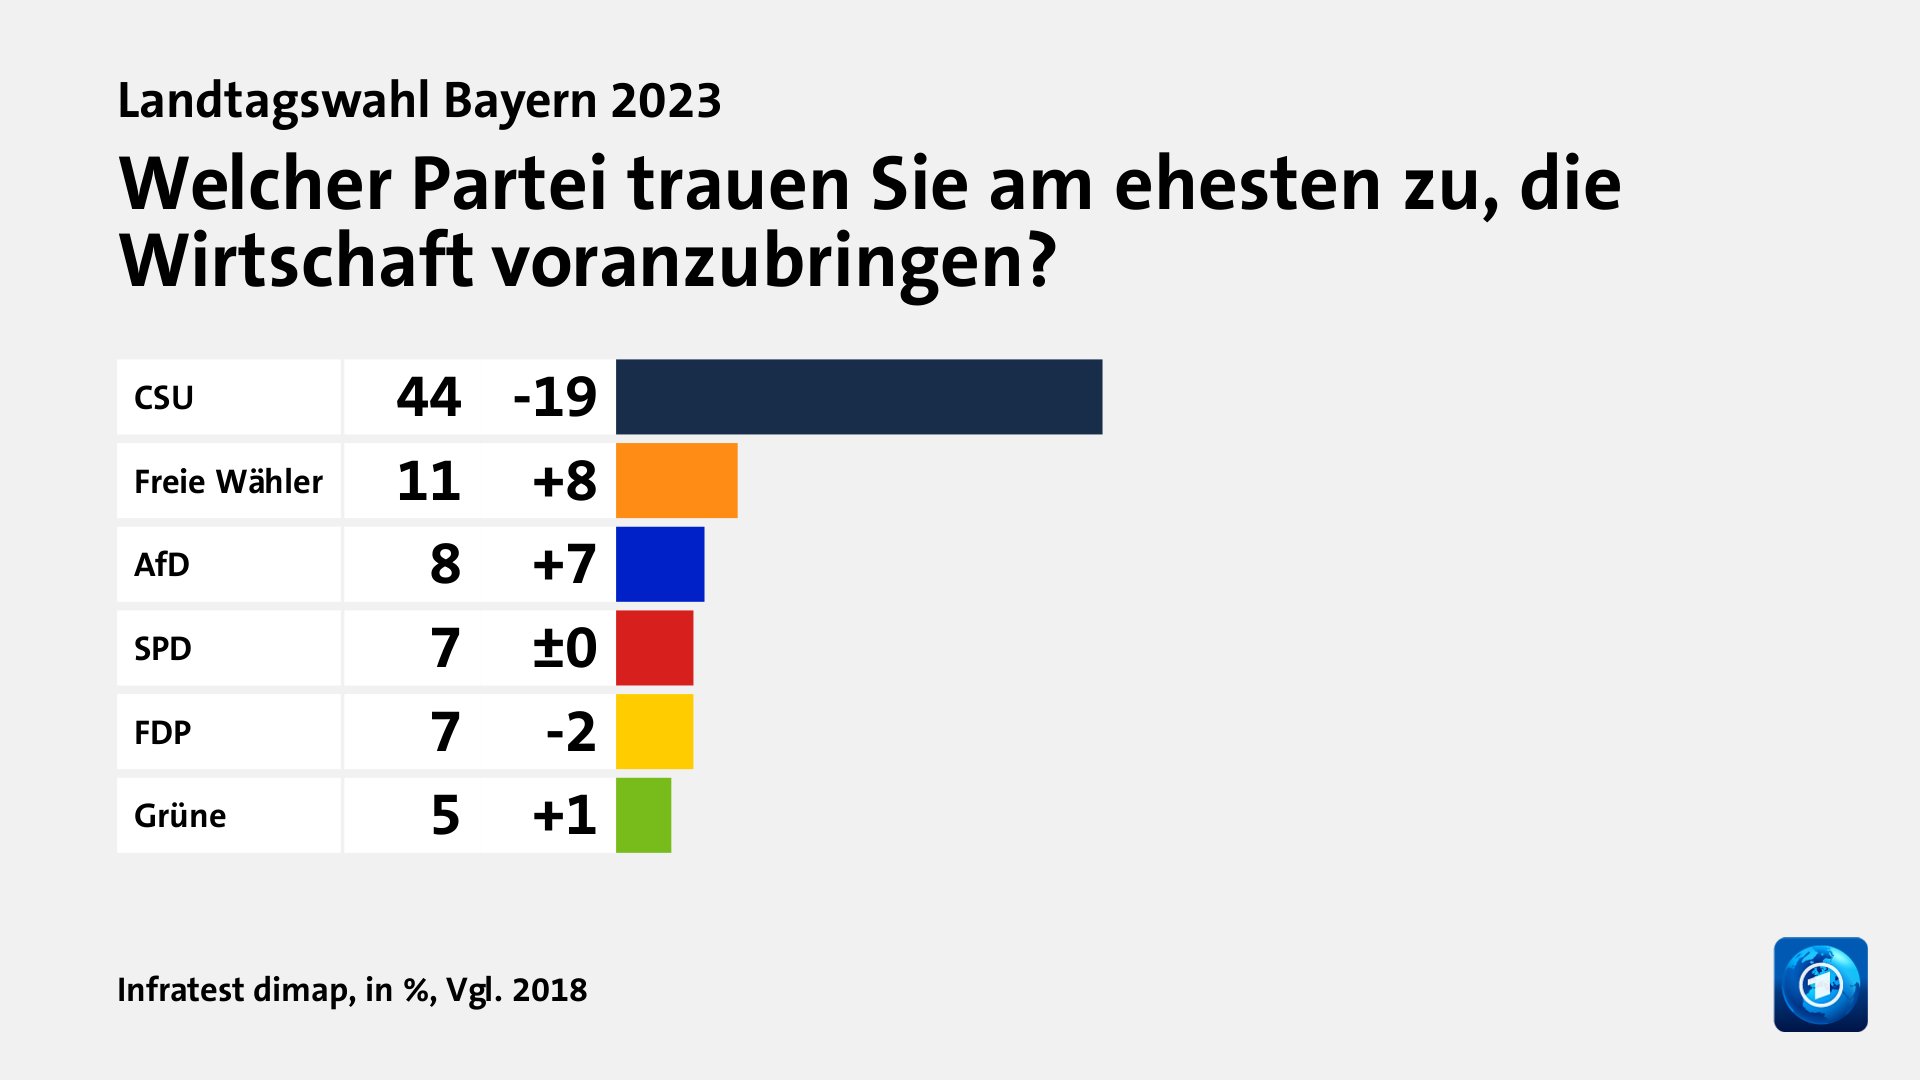 Welcher Partei trauen Sie am ehesten zu, die Wirtschaft voranzubringen?, in %, Vgl. 2018: CSU 44, Freie Wähler 11, AfD 8, SPD 7, FDP 7, Grüne 5, Quelle: Infratest dimap